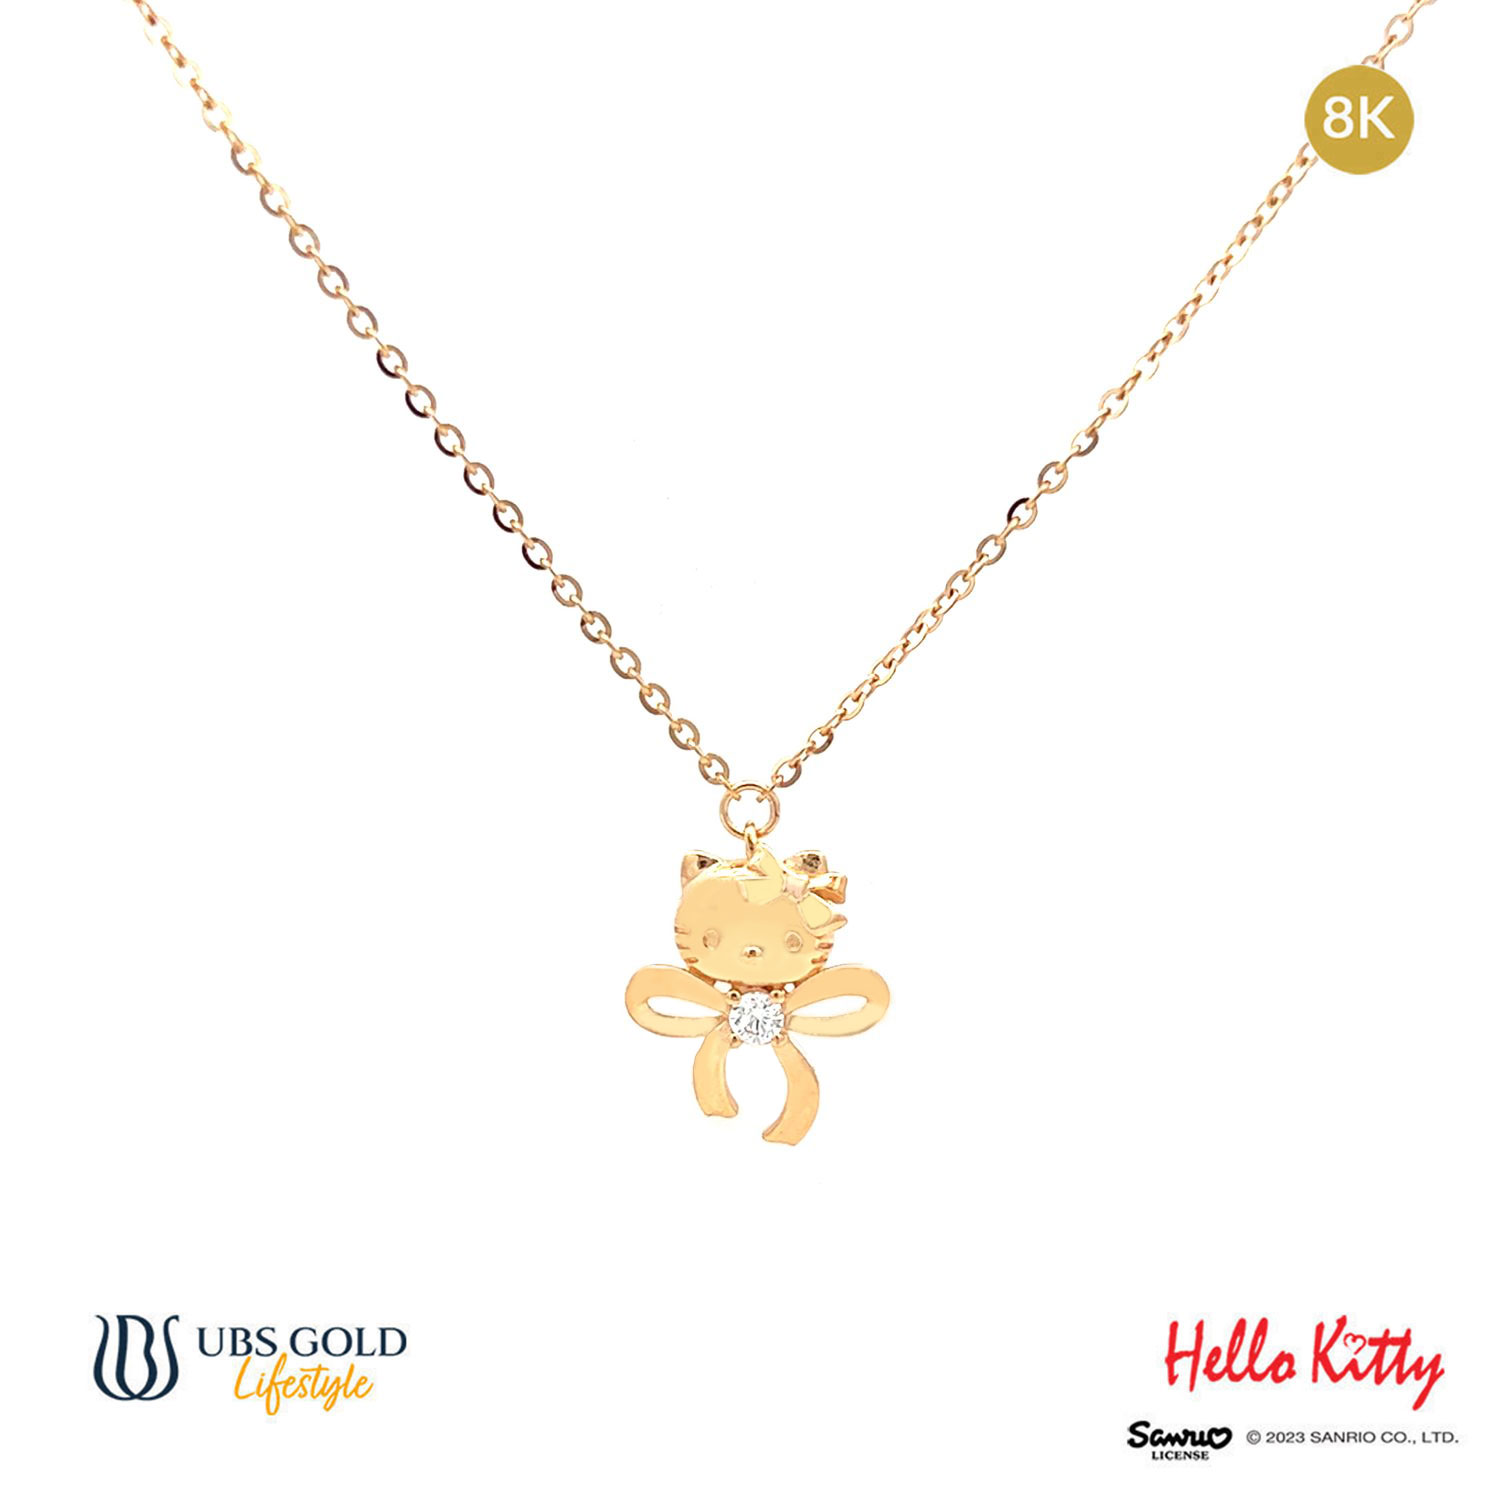 UBS Kalung Emas Sanrio Hello Kitty - Kkz0109K - 8K